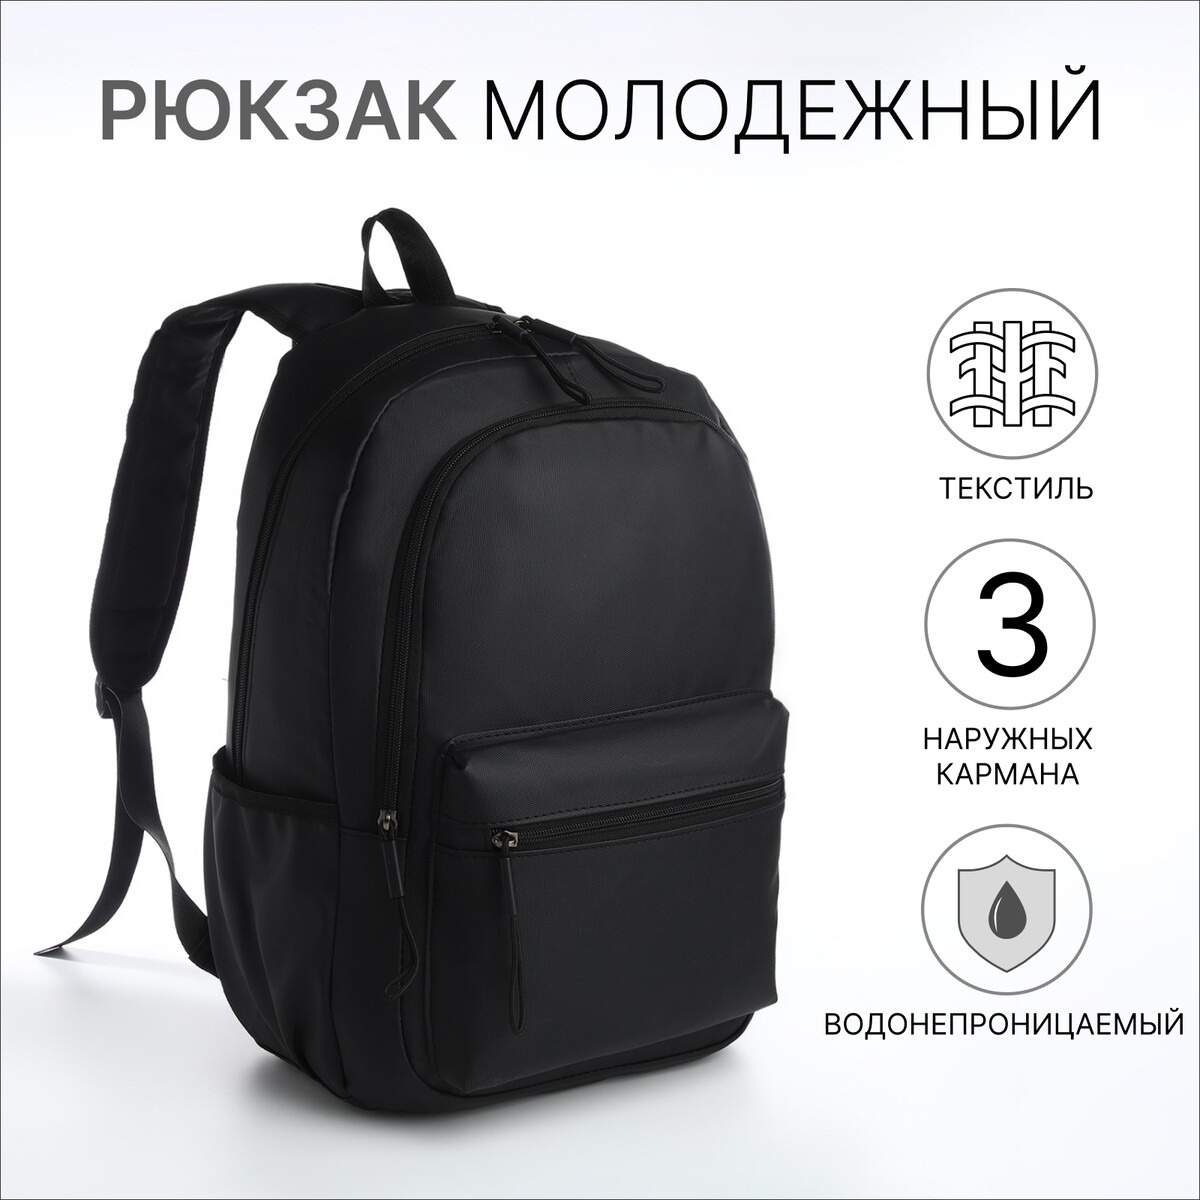 Рюкзак молодежный из текстиля на молнии, непромокаемый, 3 кармана, цвет черный